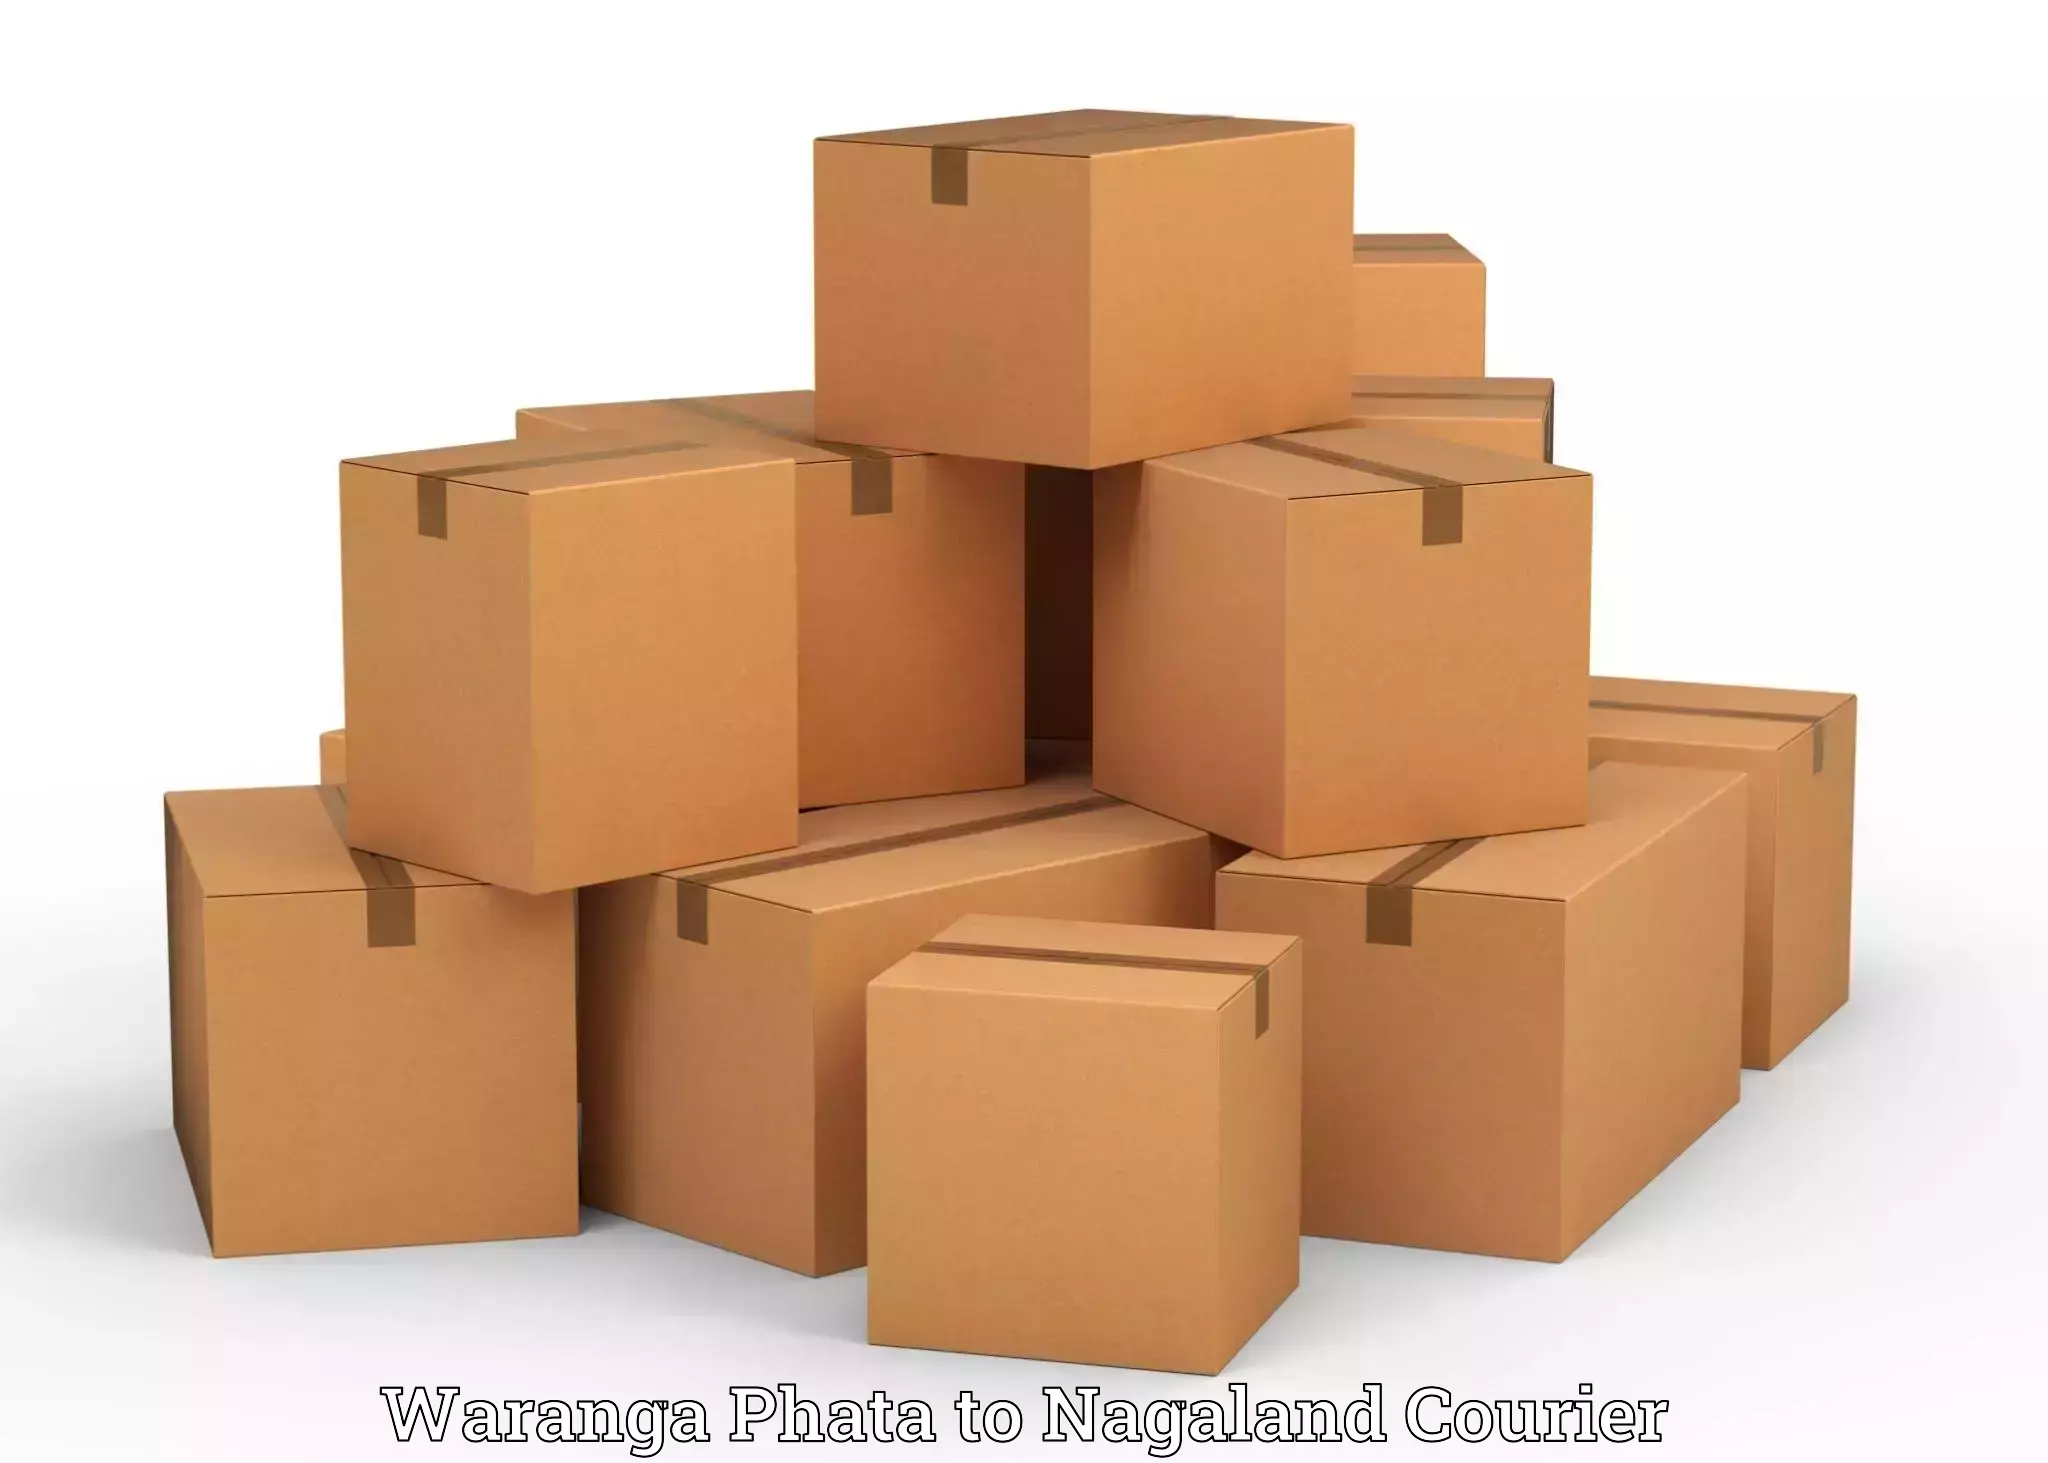 Efficient luggage delivery Waranga Phata to Wokha